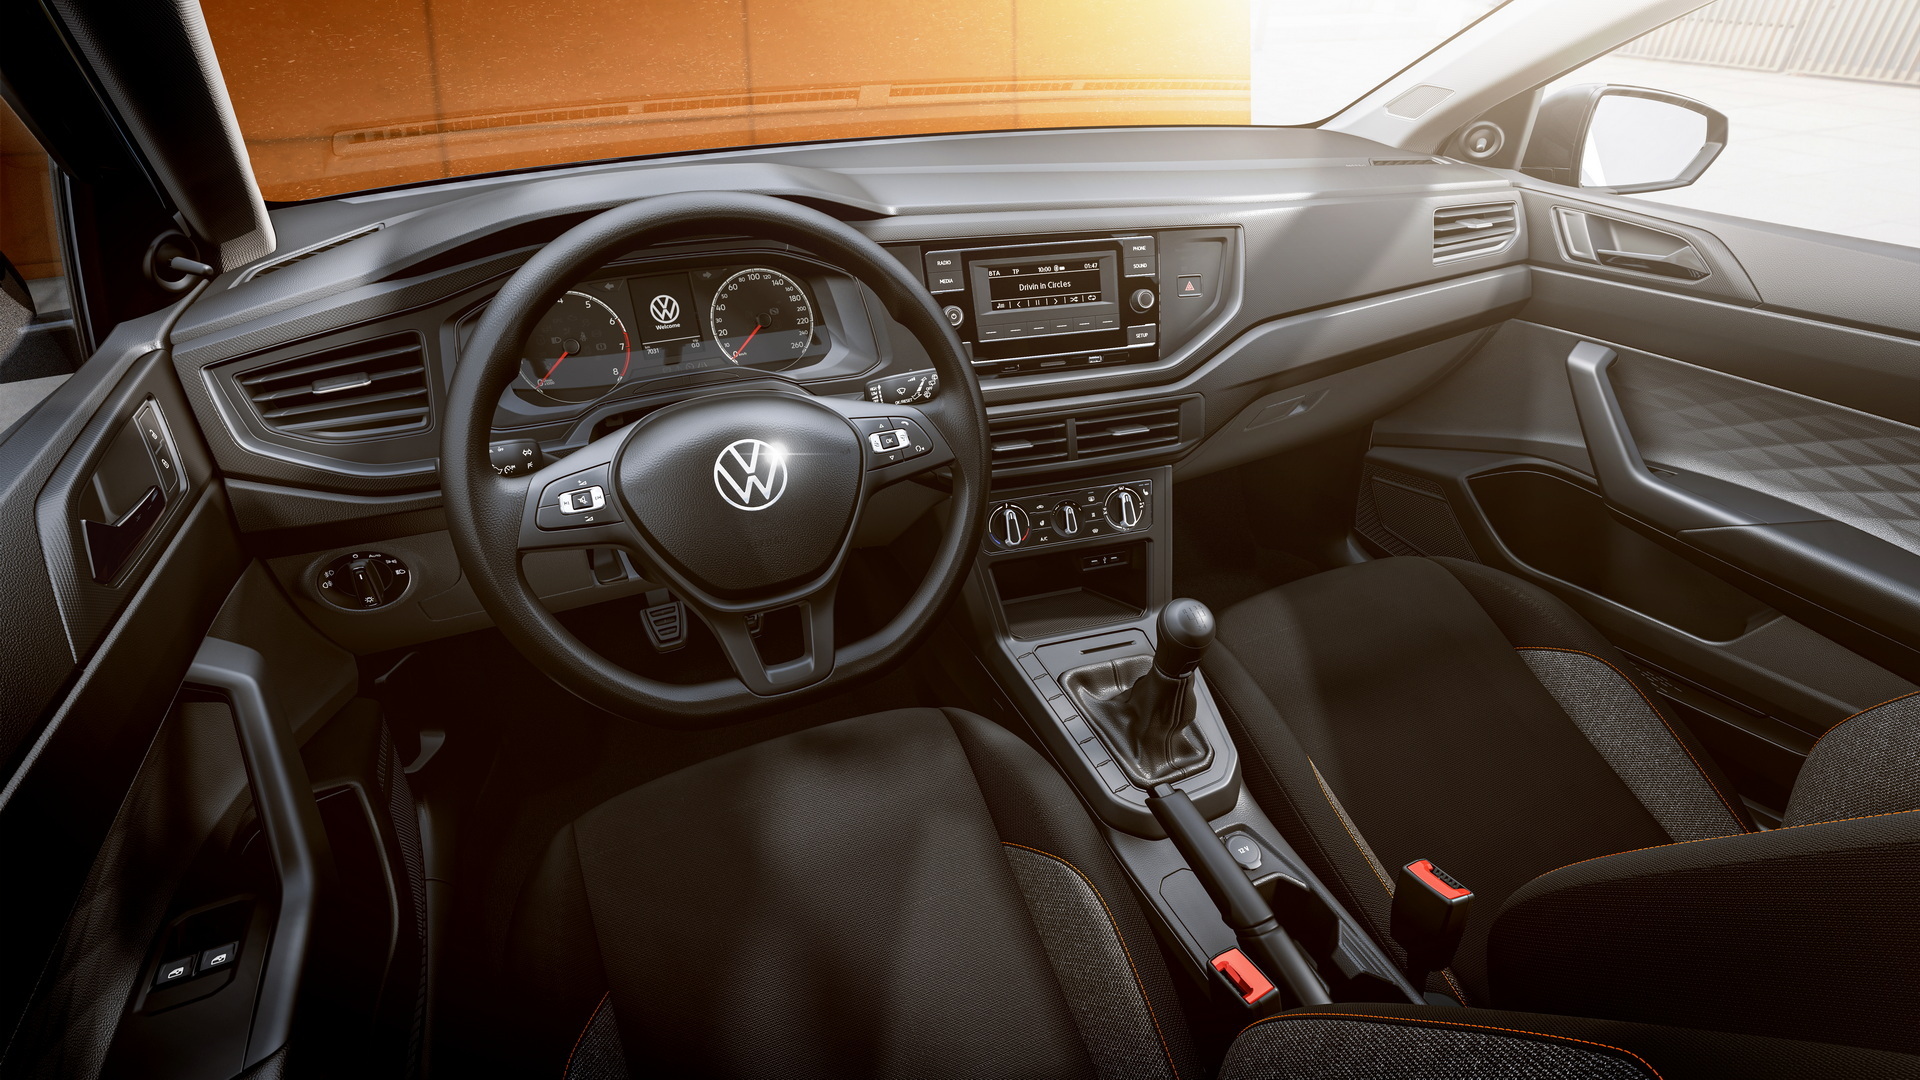 Volkswagen ima novi model unutrašnjost automobila crna sjedišta znak Volkswagena na volanu vani smeđa podloga na kojoj je parkiran automobil